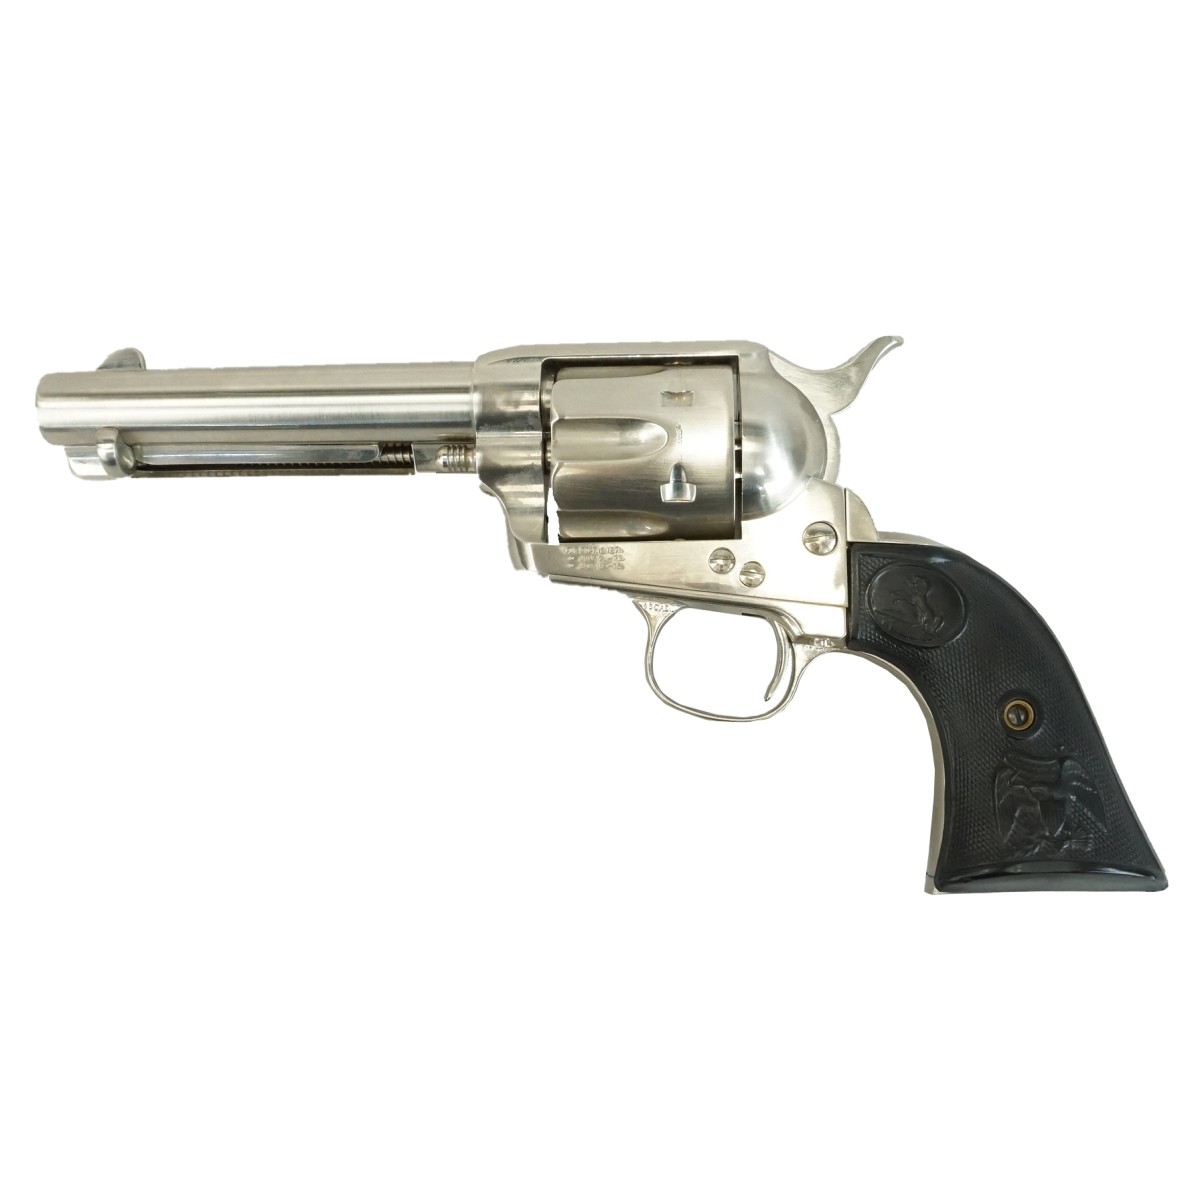 Replica of Bat Masterson's Revolver